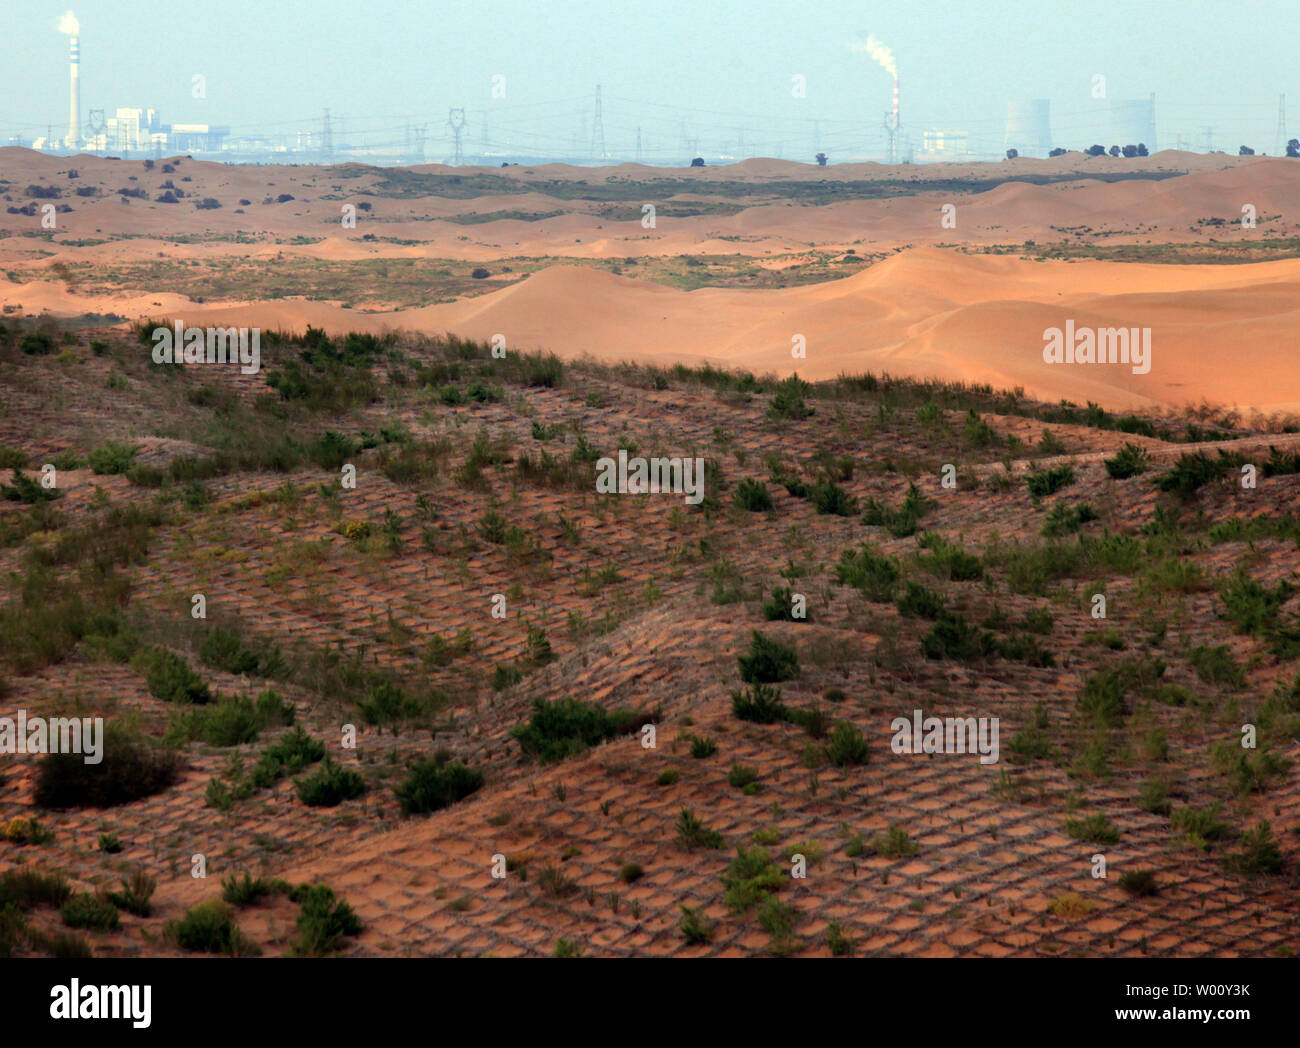 Sand dunes empiètent sur le Baijitan-sable de contrôle des exploitations agricoles dans la région de Lingwu, ville située à l'extrémité sud-ouest de l'Maowusu désert dans le nord-ouest de la province de la région autonome du Ningxia Hui, le 23 septembre 2011. L'empiéter les sables du désert a forcé la ville à développer et construire un 'livre vert' de l'écran de protection de la végétation et des arbres. Un haut fonctionnaire chinois a déclaré qu'il faudra 300 ans pour faire reculer l'avancement du pays déserts au rythme de progression actuel. Plus d'un quart de la Chine est soit couvert par le désert ou est une terre qui souffre de désertification agressif. UPI/St Banque D'Images